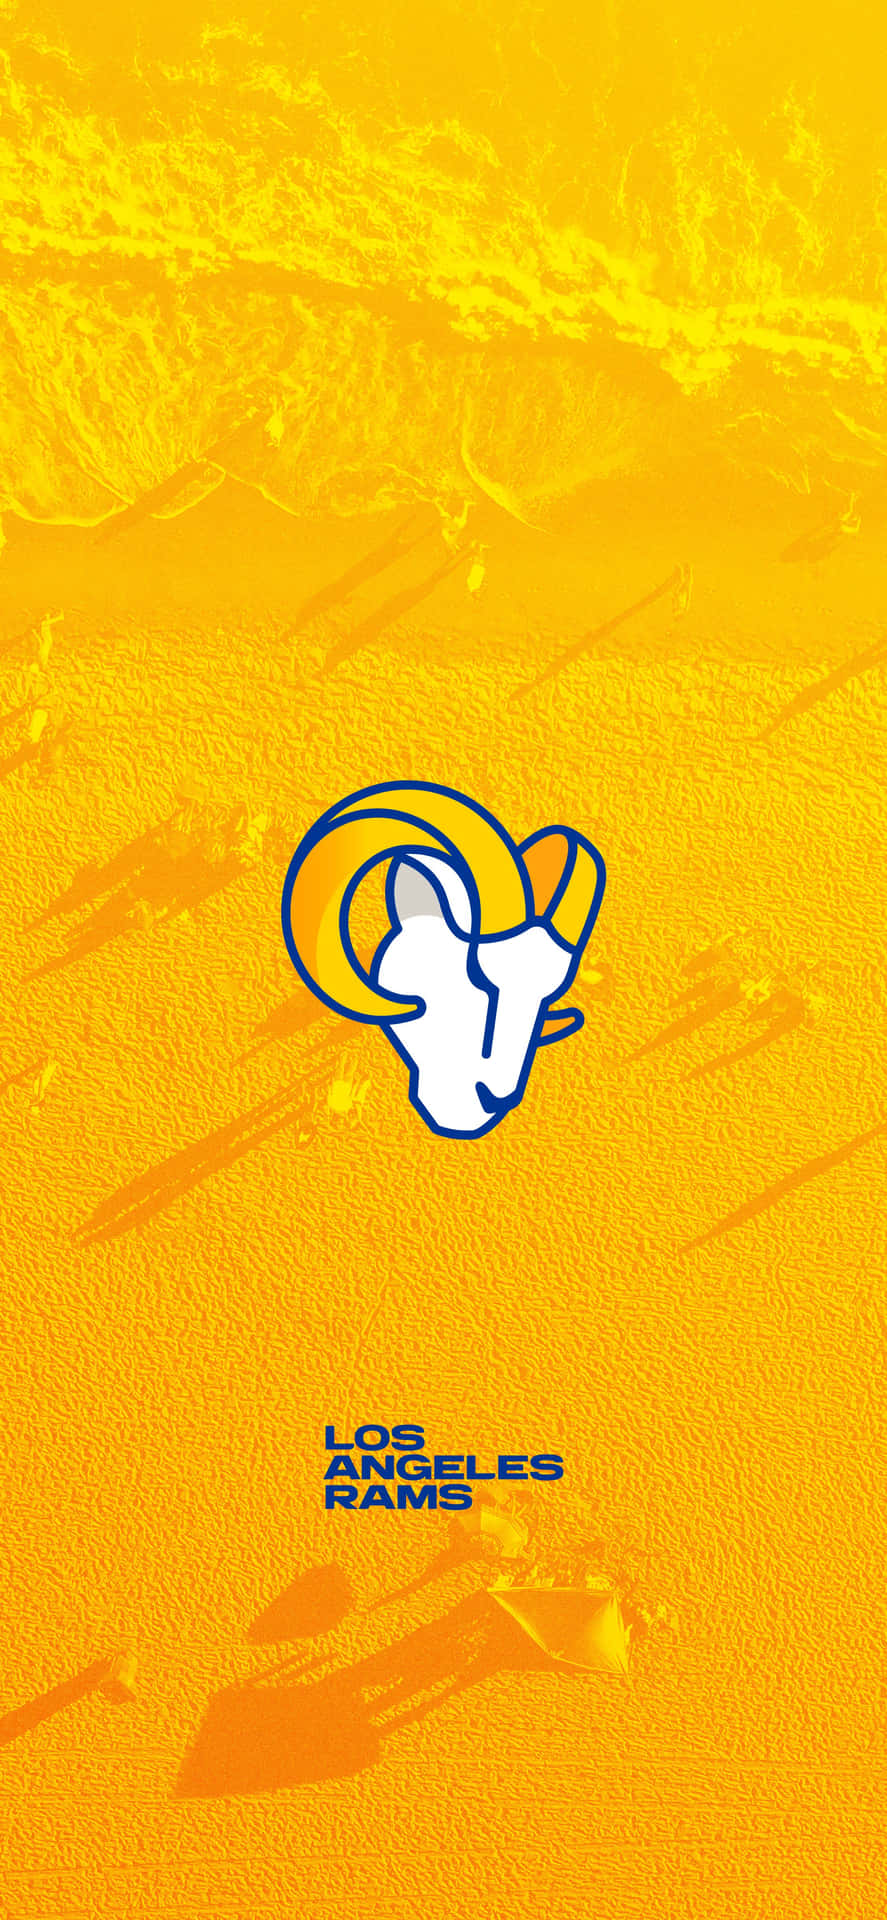 En gul og oransje bakgrunn med et logo for Los Angeles Rams. Wallpaper